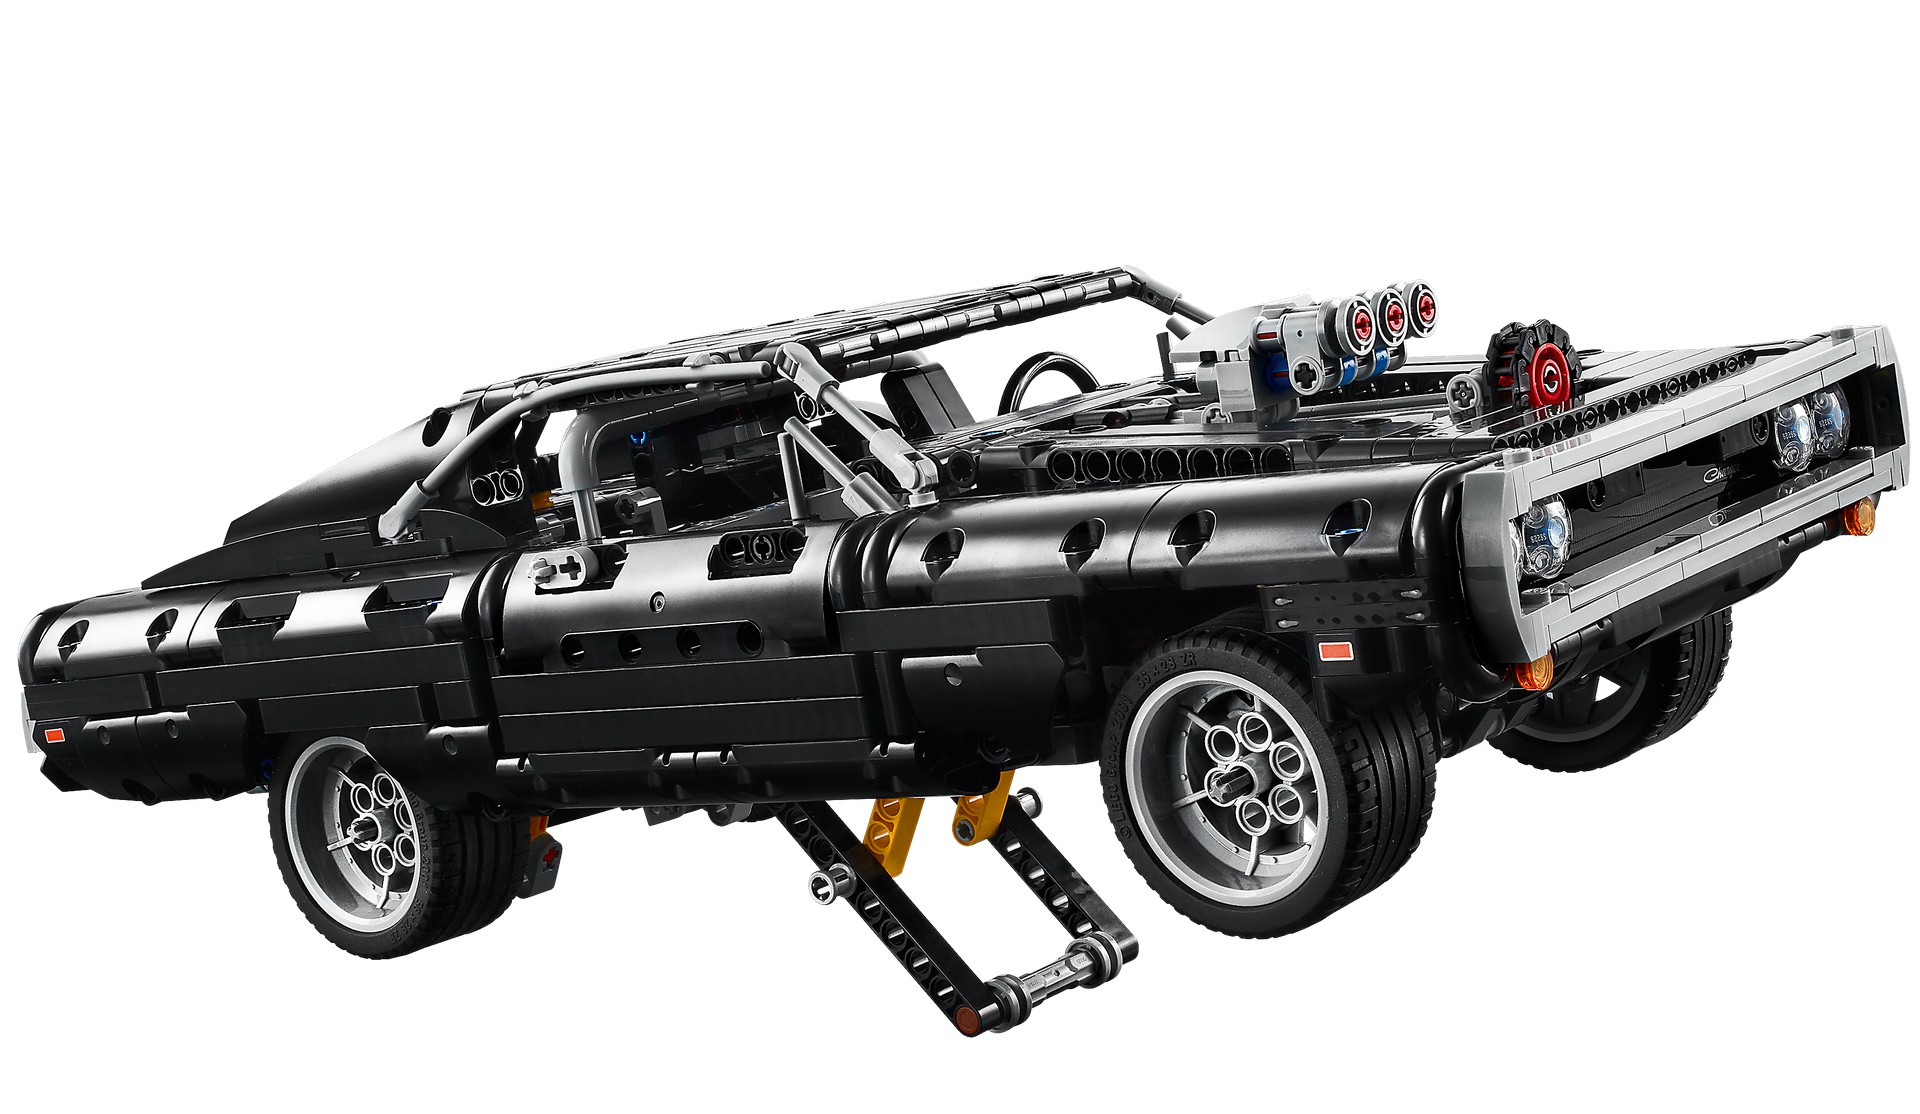 Dodge Charger do filme “Velocidade Furiosa” mostrado em Lego